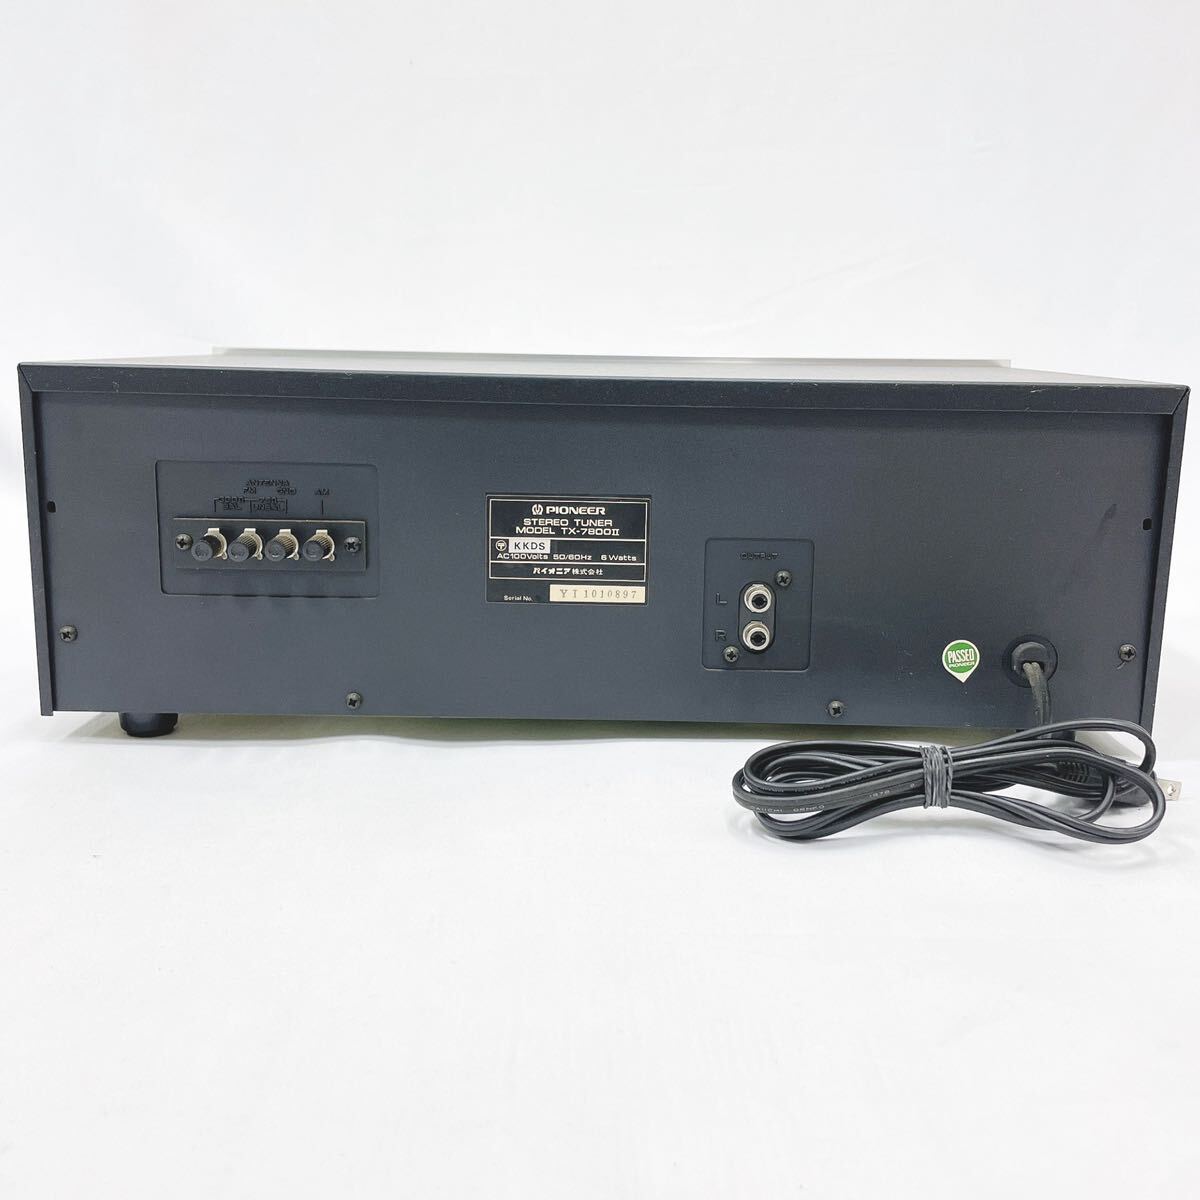  электризация подтверждено PIONEER Pioneer TX-7800Ⅱ AM/FM стерео тюнер звуковая аппаратура руководство пользователя с коробкой R.04100